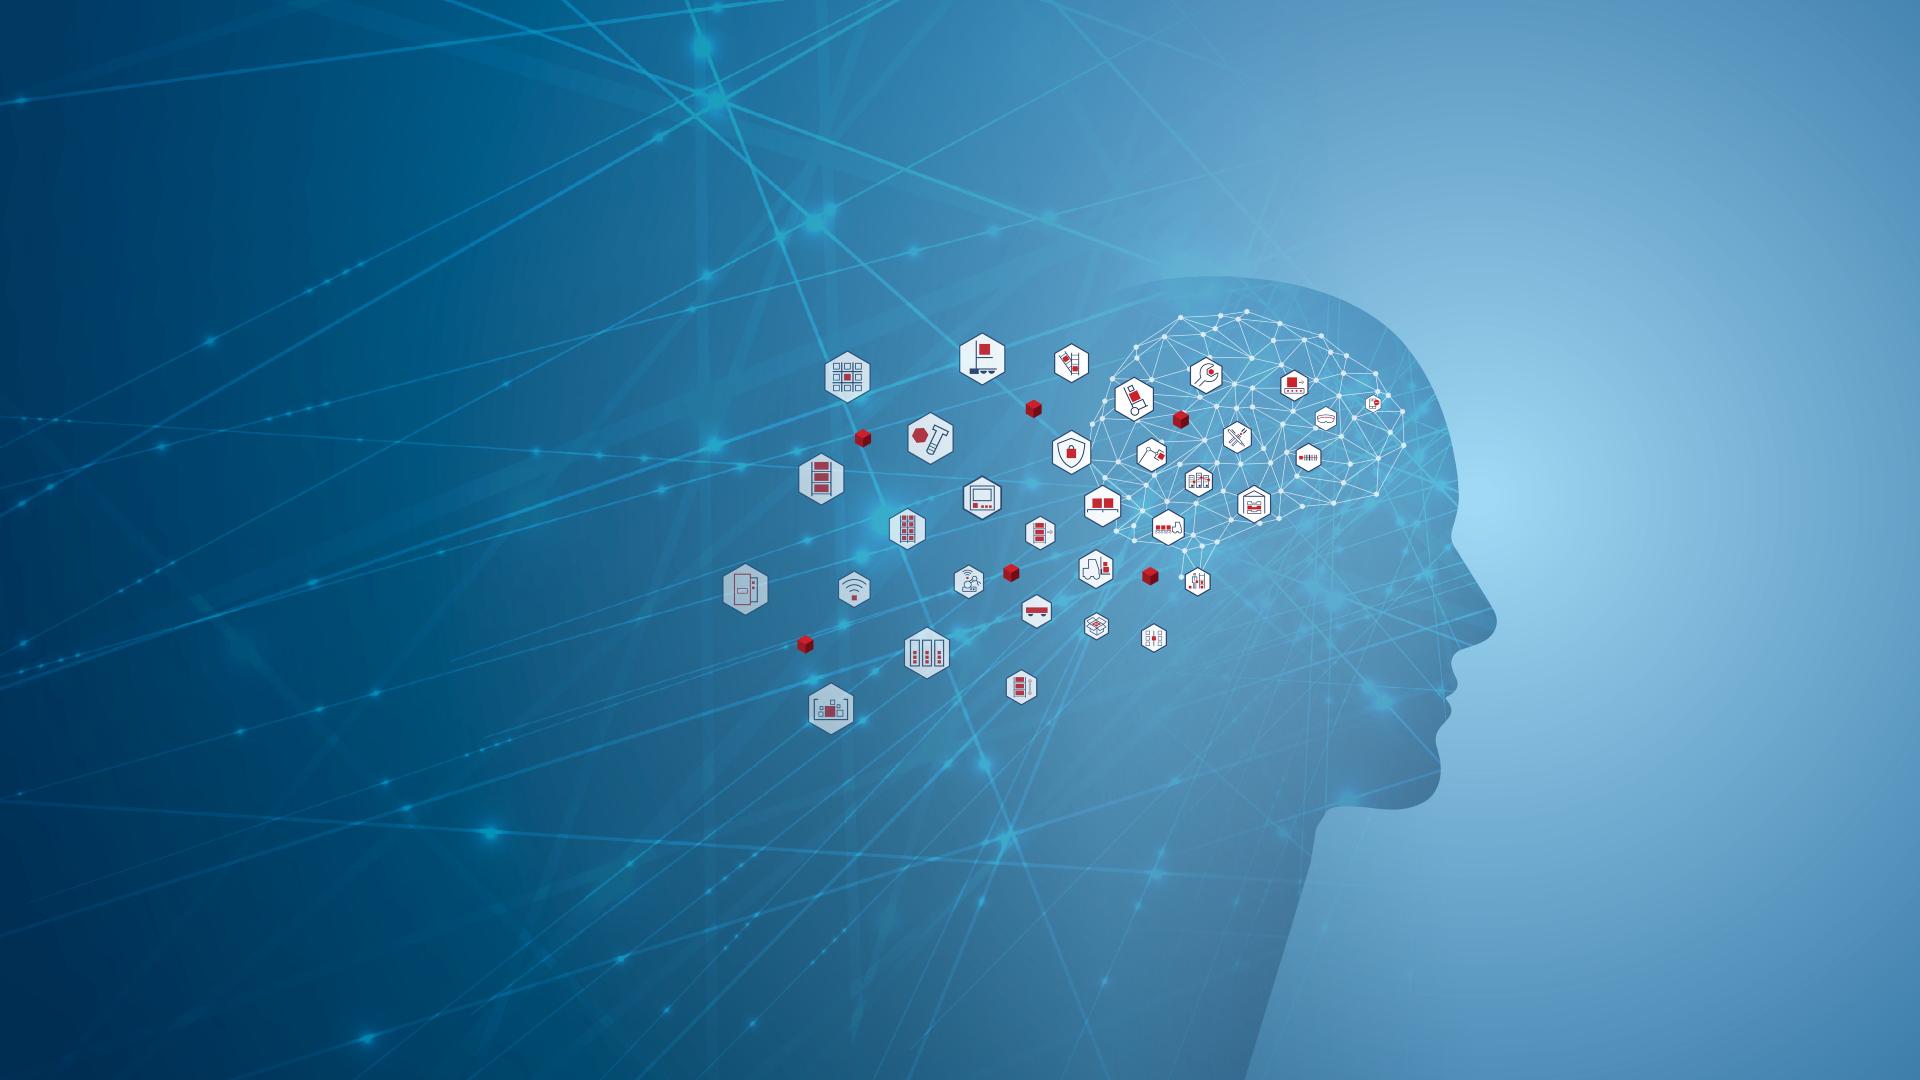 Headerbild viastore Glossar, menschliche Silhouette auf blauem Hintergrund mit Icons, die aus Gehirn fliegen